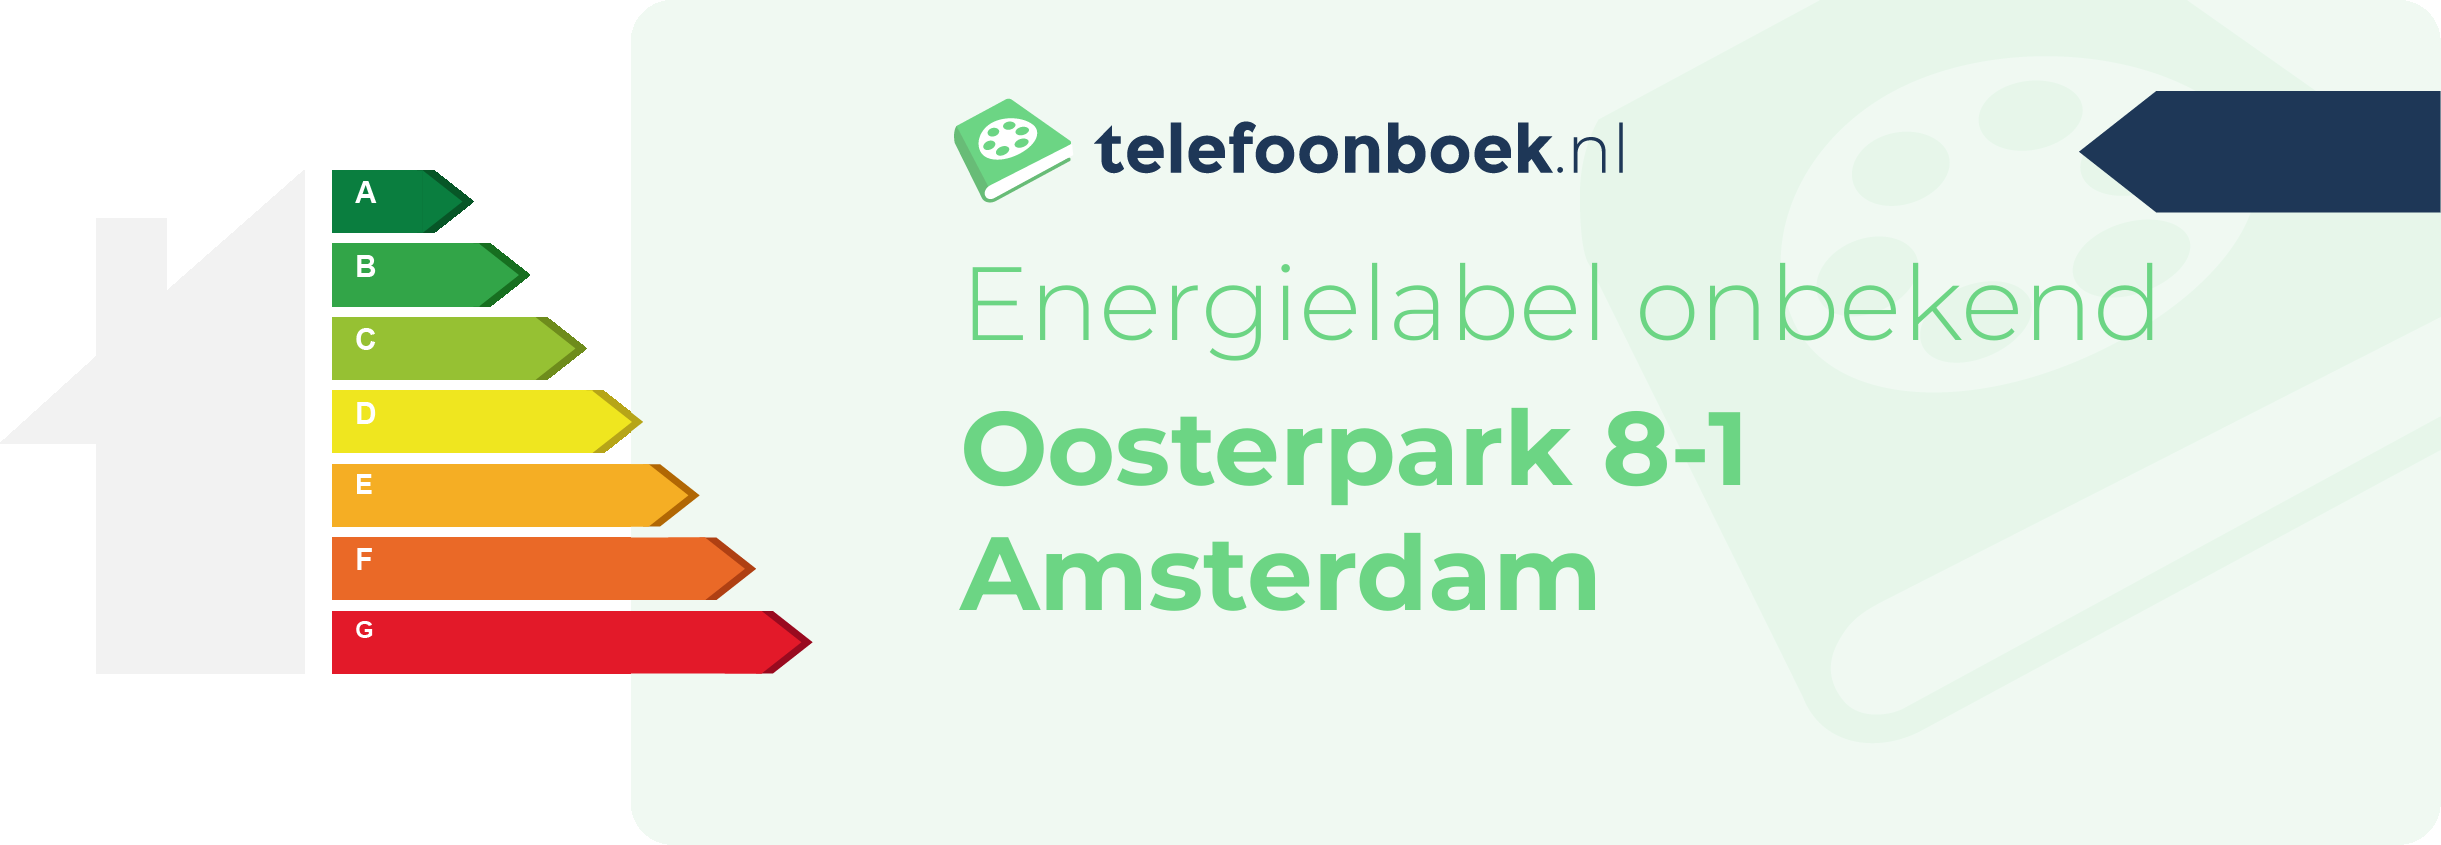 Energielabel Oosterpark 8-1 Amsterdam